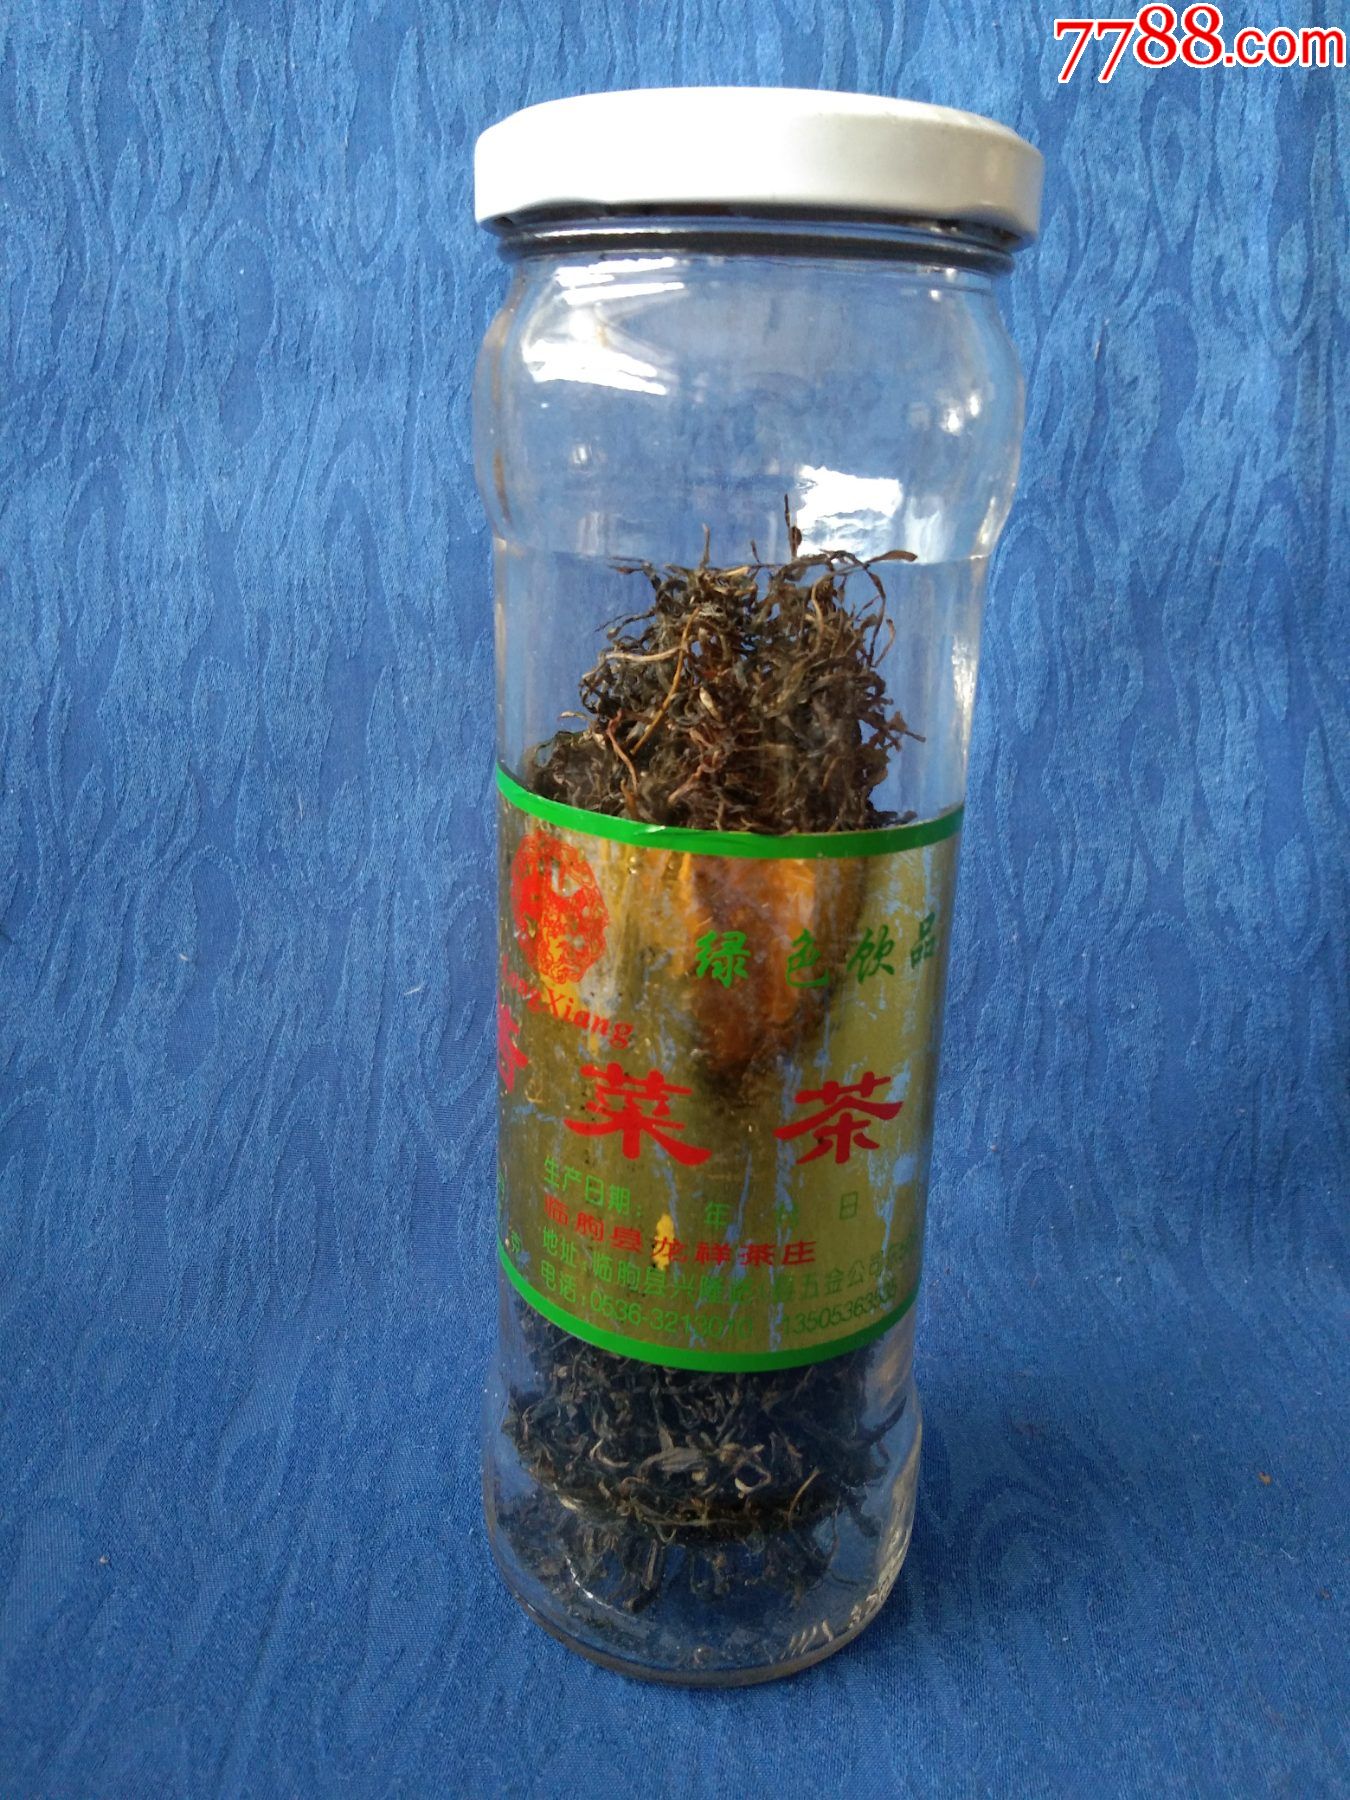 玻璃瓶苦菜茶临朐县龙翔茶庄2002年生产仅供收藏